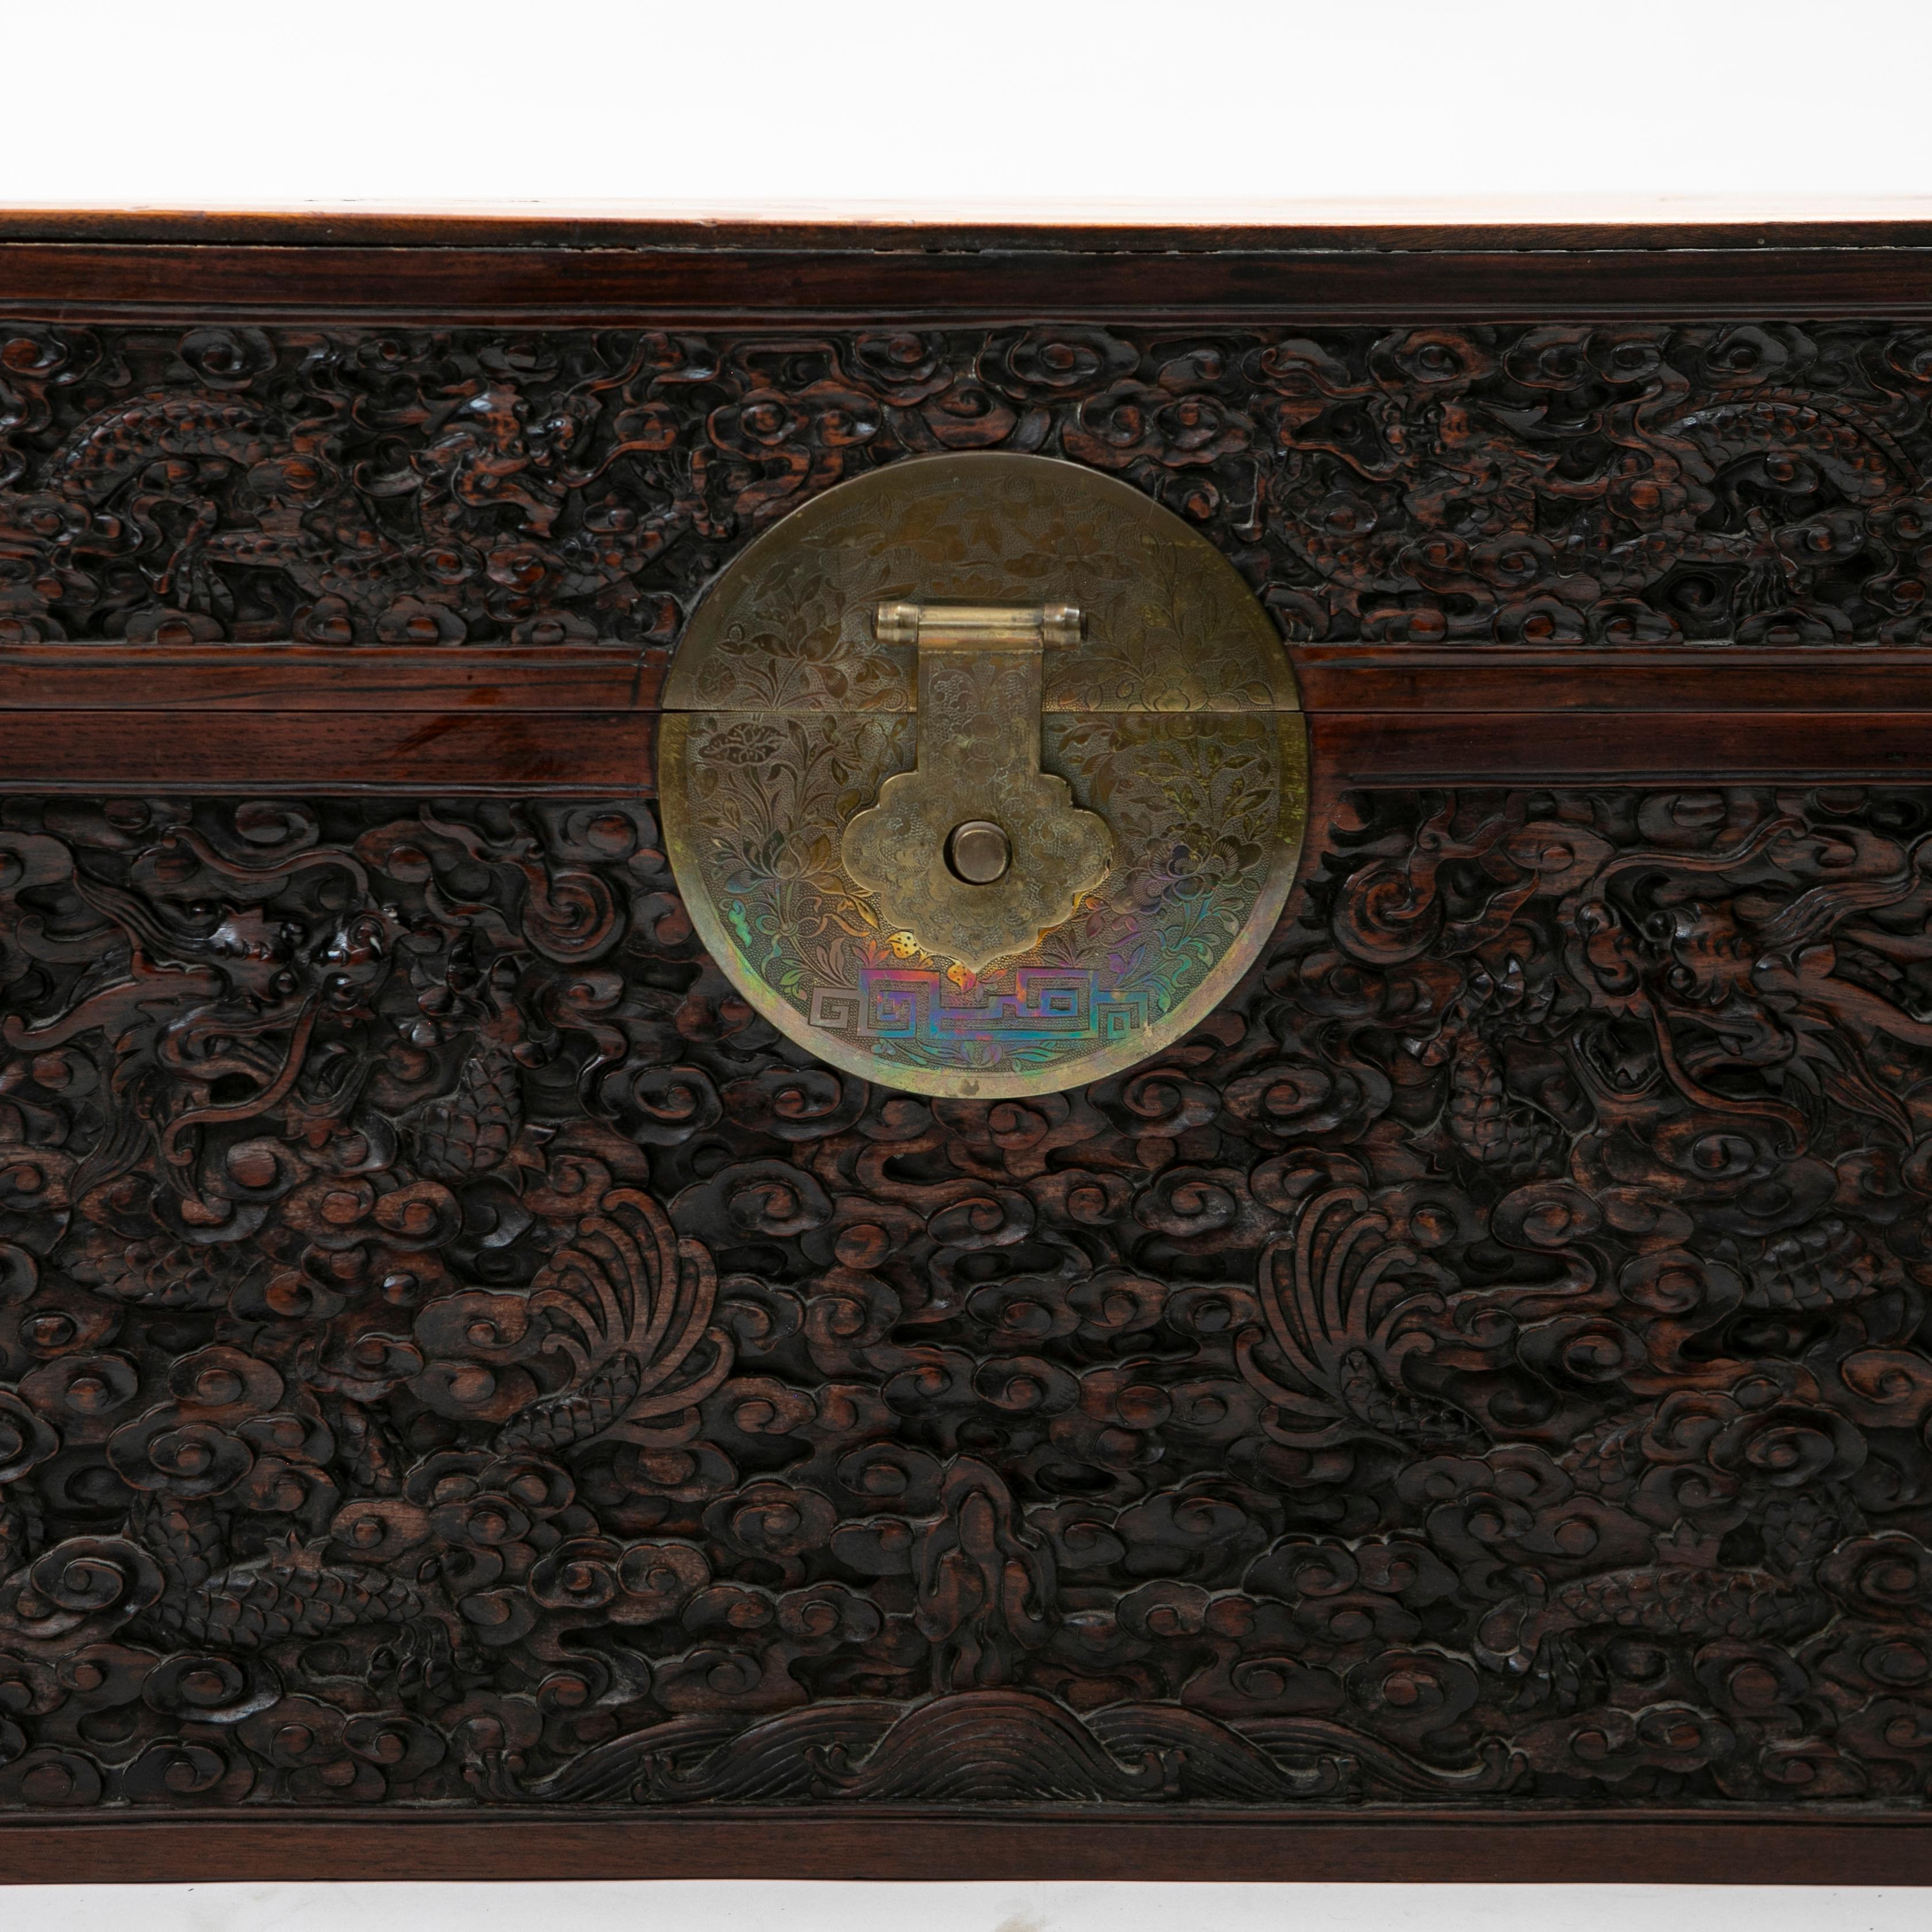 Eine antike geschnitzte chinesische Truhe aus Kampfer und Schwarzholz.
Blackwood Front geschnitzt in Relief mit Drachen in den Himmel / Wolken.
Mit originalem Medaillon aus Messing, reich ziseliert in Form von Blumen und Blättern.

Unberührter